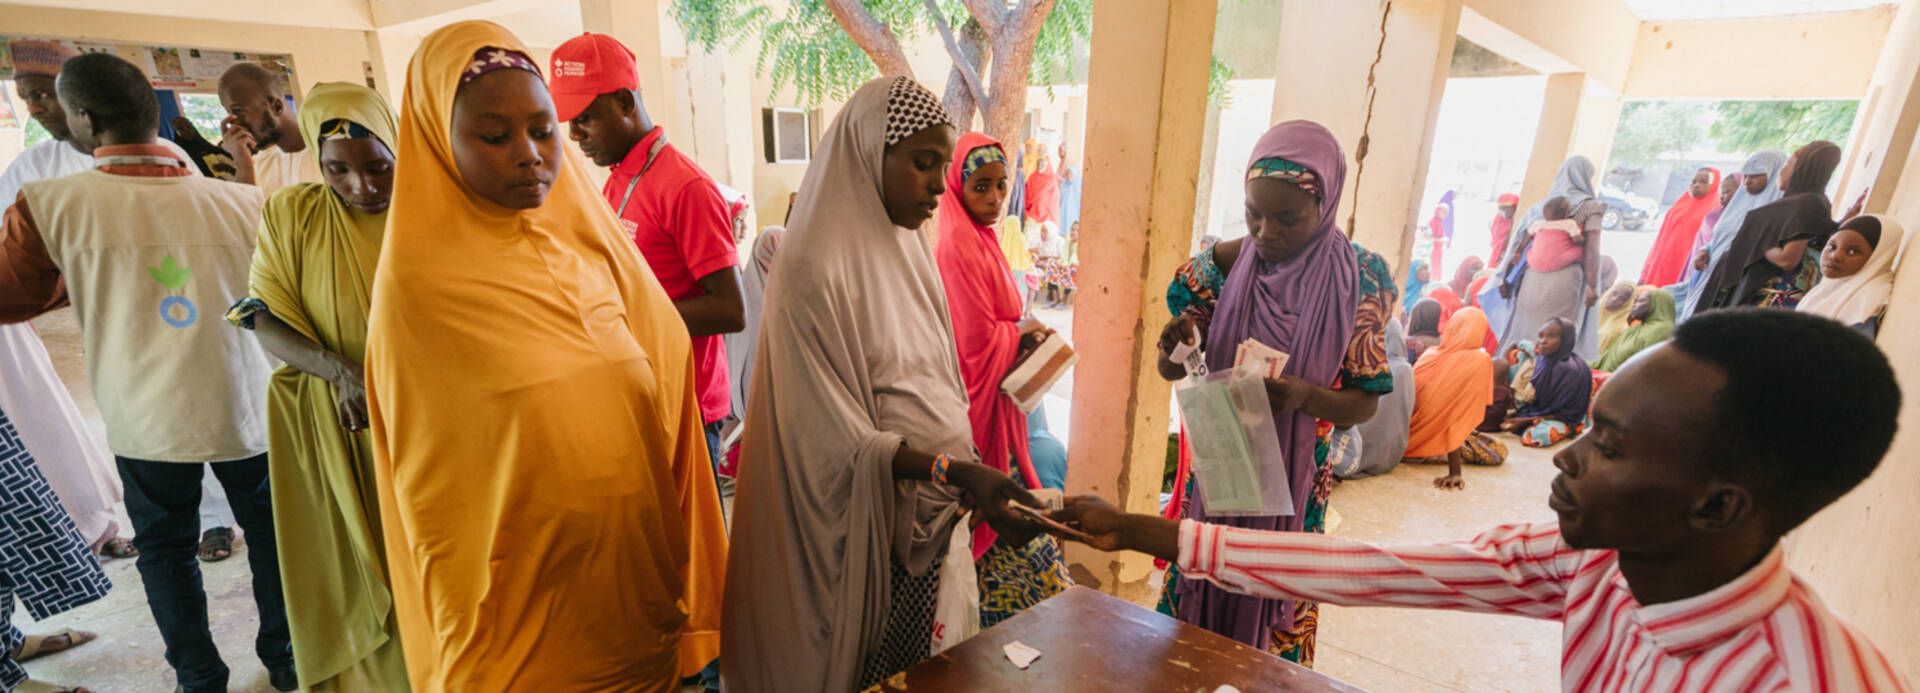 Mitarbeiter von Aktion gegen den Hunger verteilt Geld an Menschen in Nigeria.